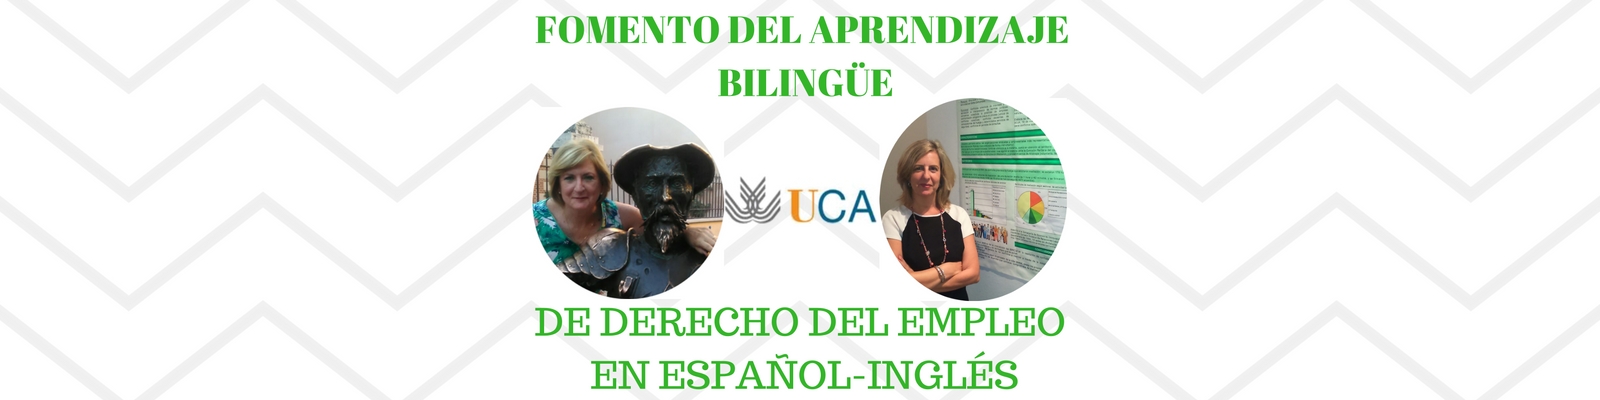 Fomento del aprendizaje bilingüe de Derecho del Empleo en español-inglés en la UCA. Por Mª Cristina Aguilar y Mª Carmen Lario